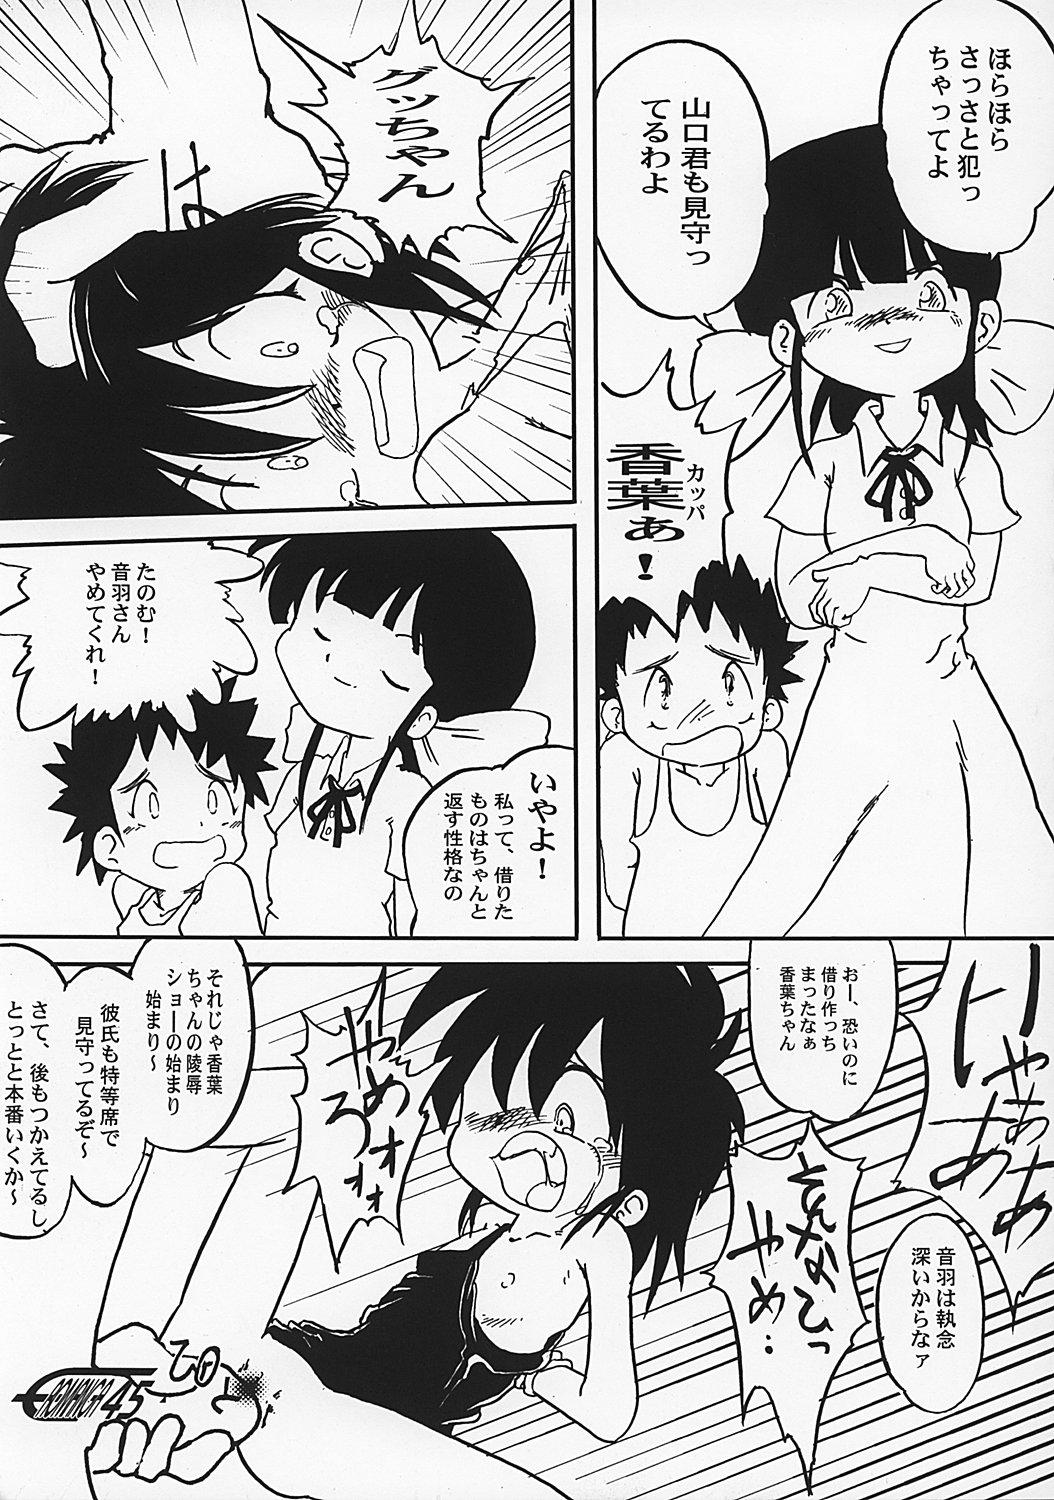 Manga Science 2 - Onnanoko no Himitsu 43